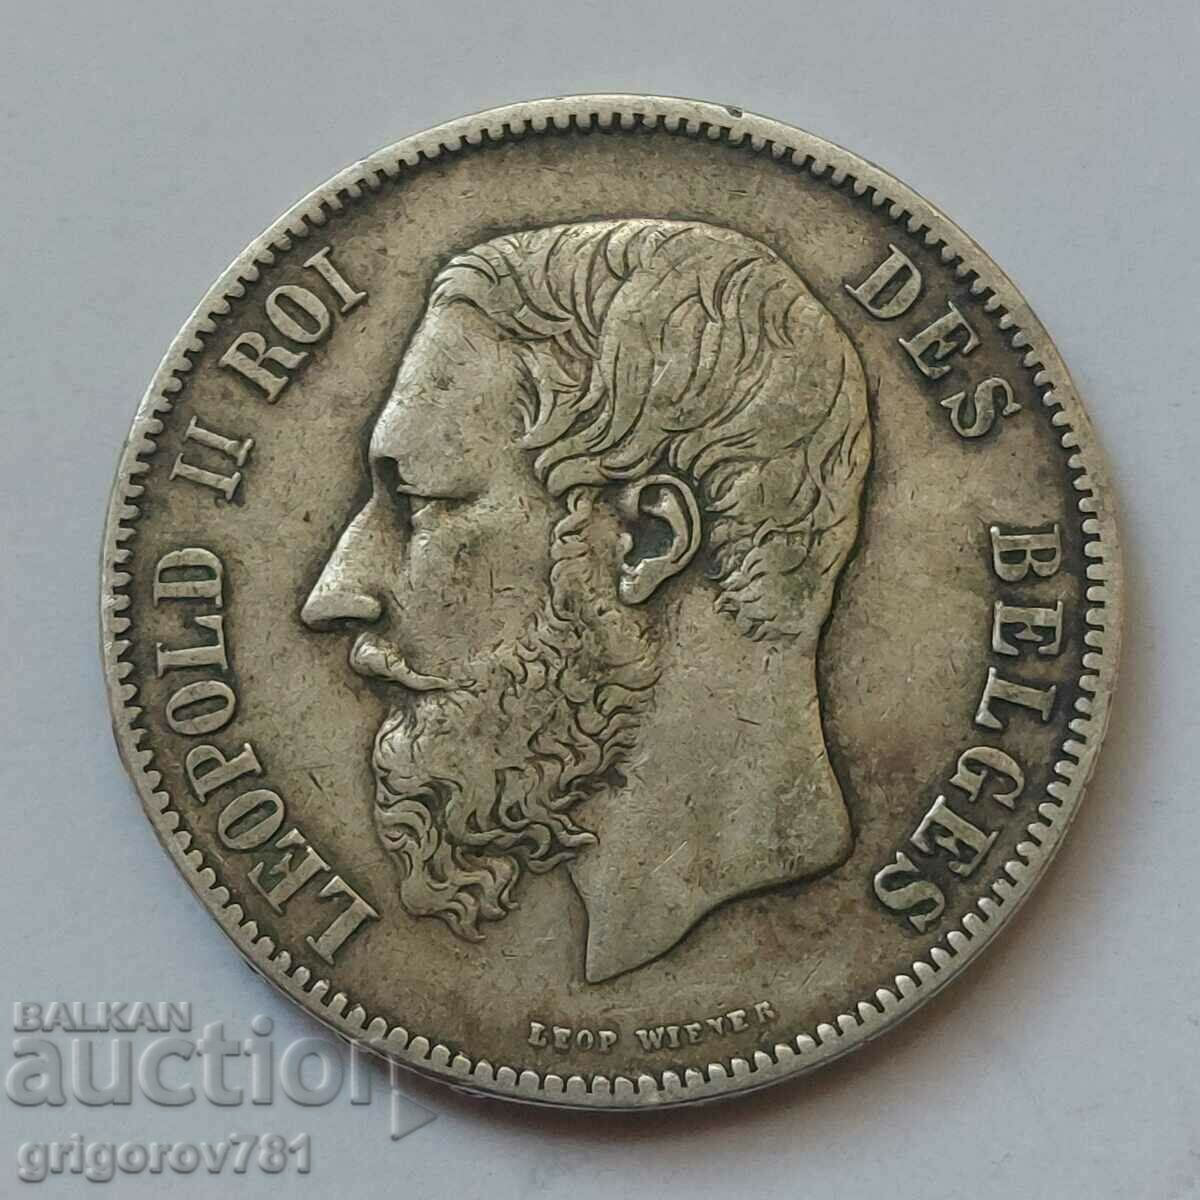 5 Francs Silver Belgium 1868 Silver Coin #160